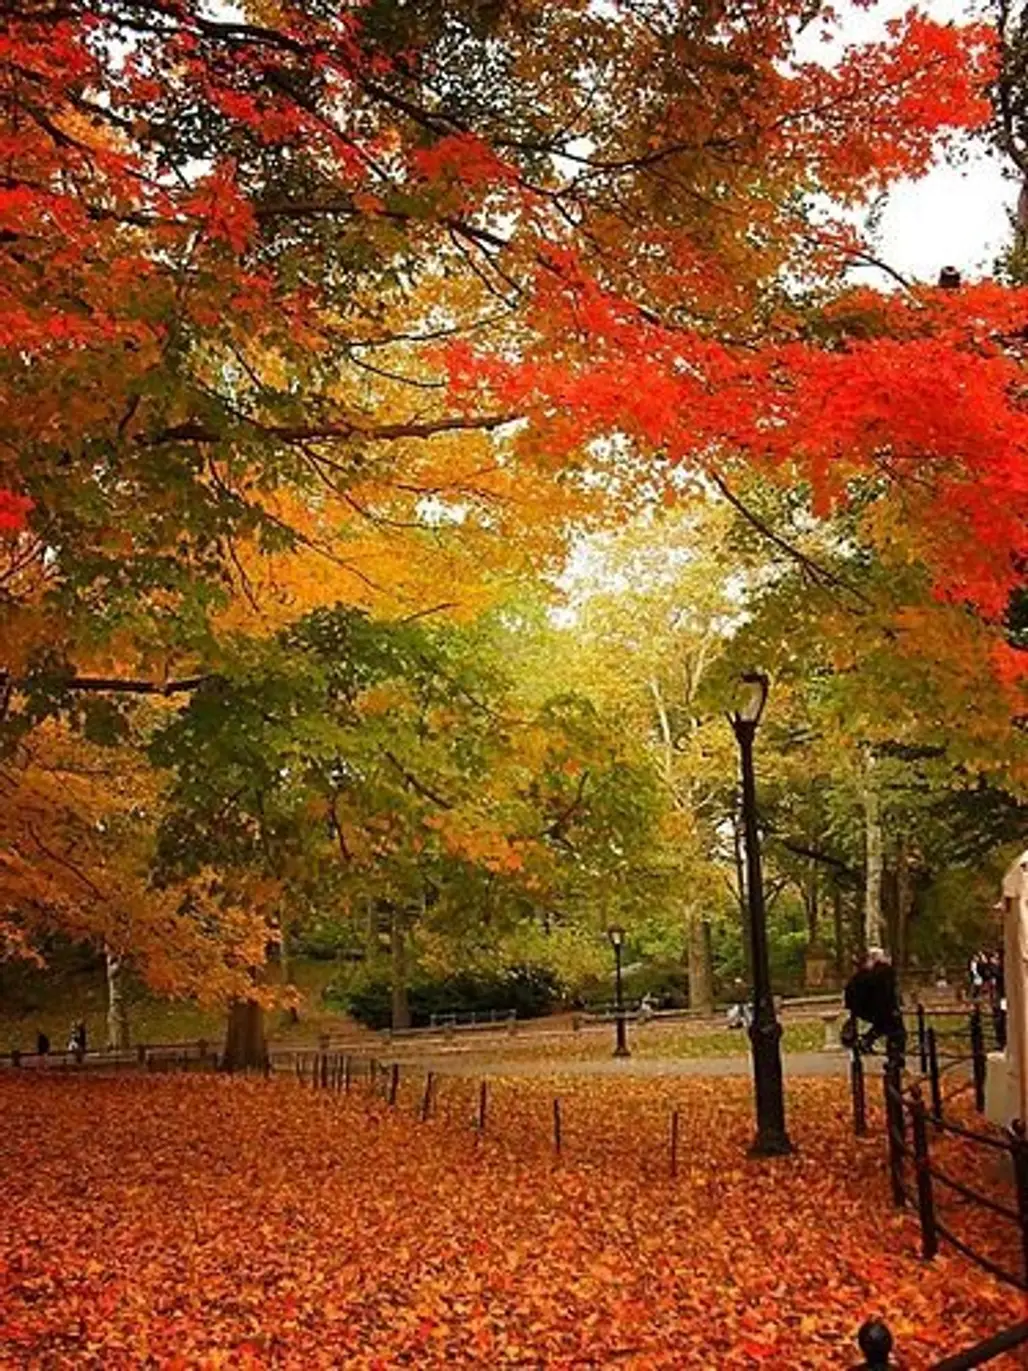 Autumn - Central Park, New York City